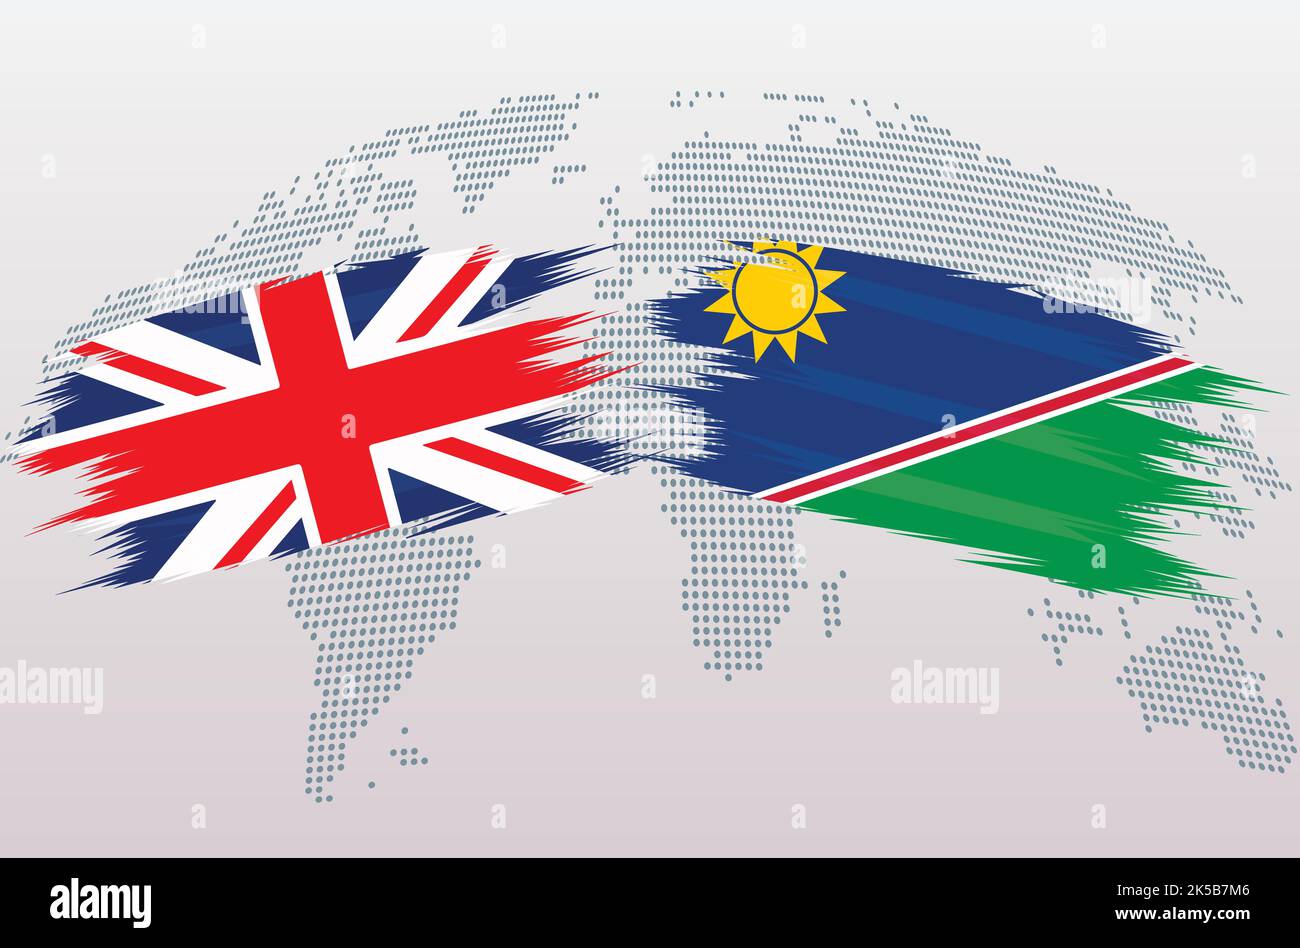 Bandiere britanniche e Namibia. Bandiere del Regno Unito e della Namibia, isolate su sfondo grigio della mappa del mondo. Illustrazione vettoriale. Illustrazione Vettoriale